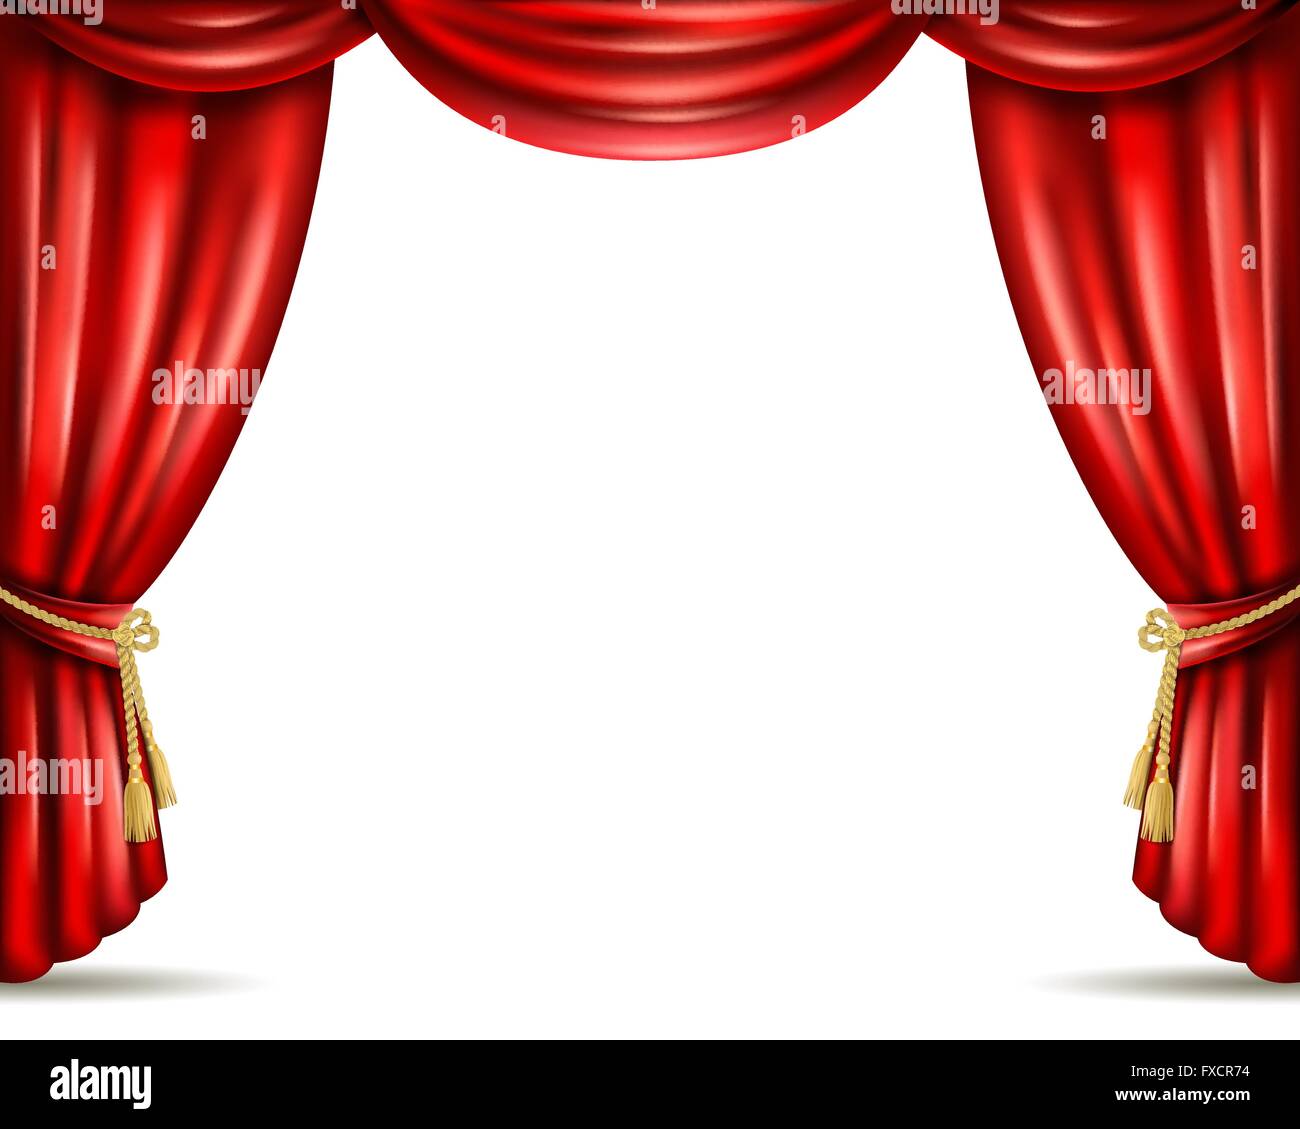 Theater curtain open flat banner illustration Stock Vector